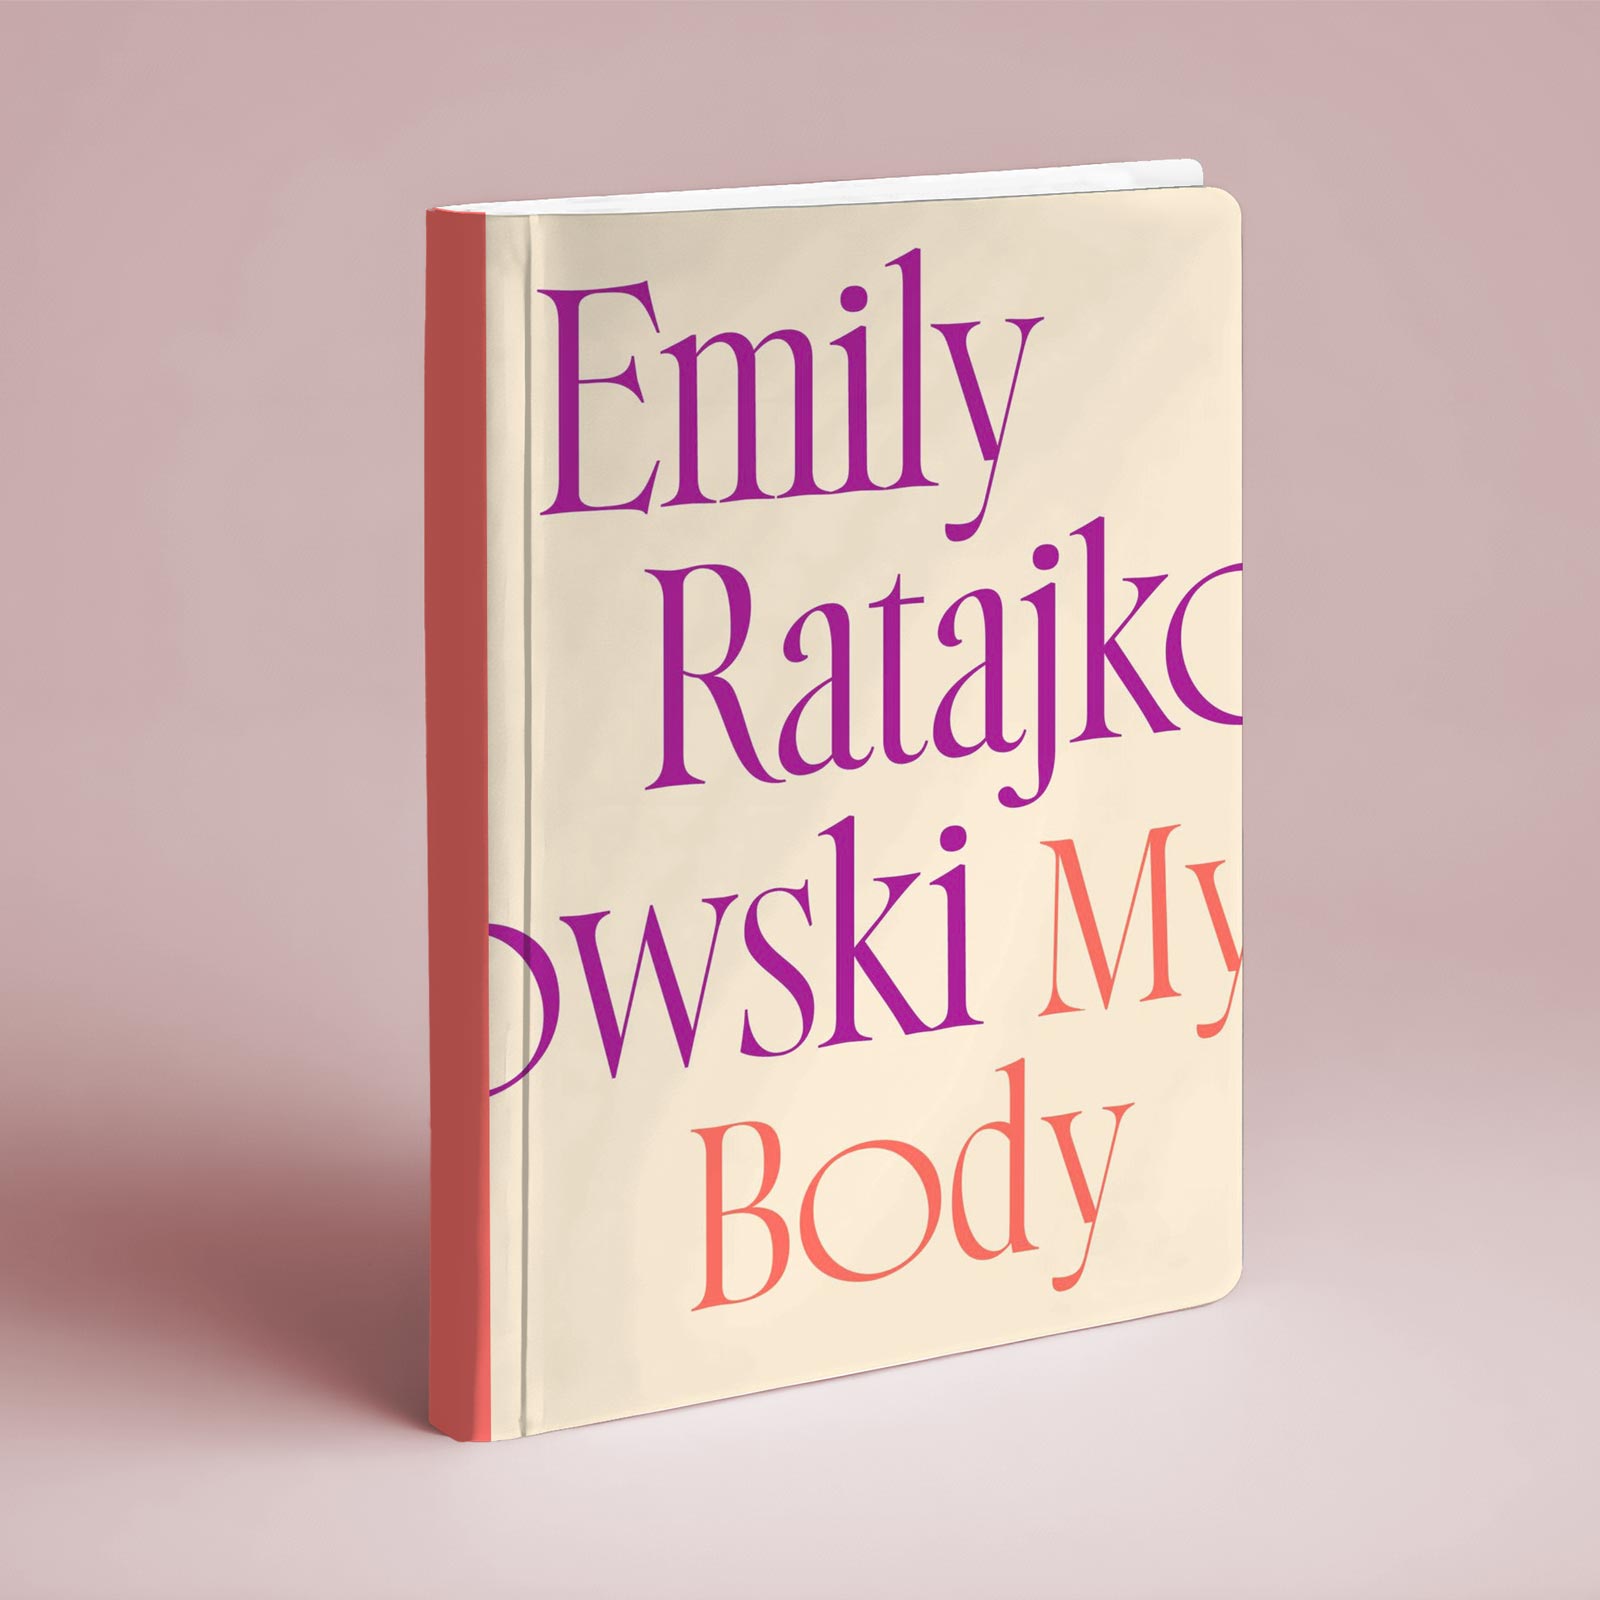 My Body by Emily Ratajkowski